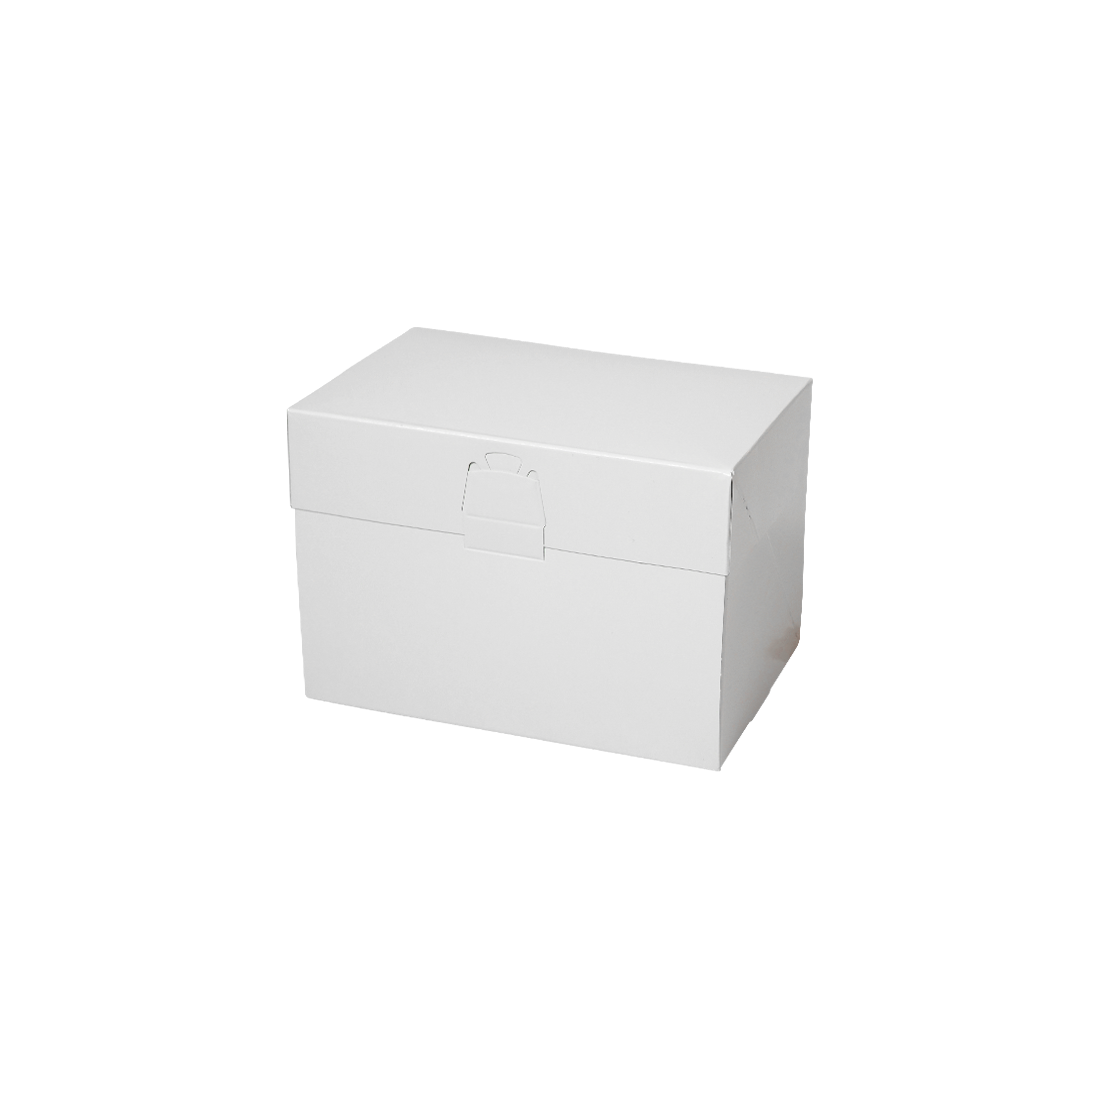 ロックBOX 105-ホワイト 3.5×5